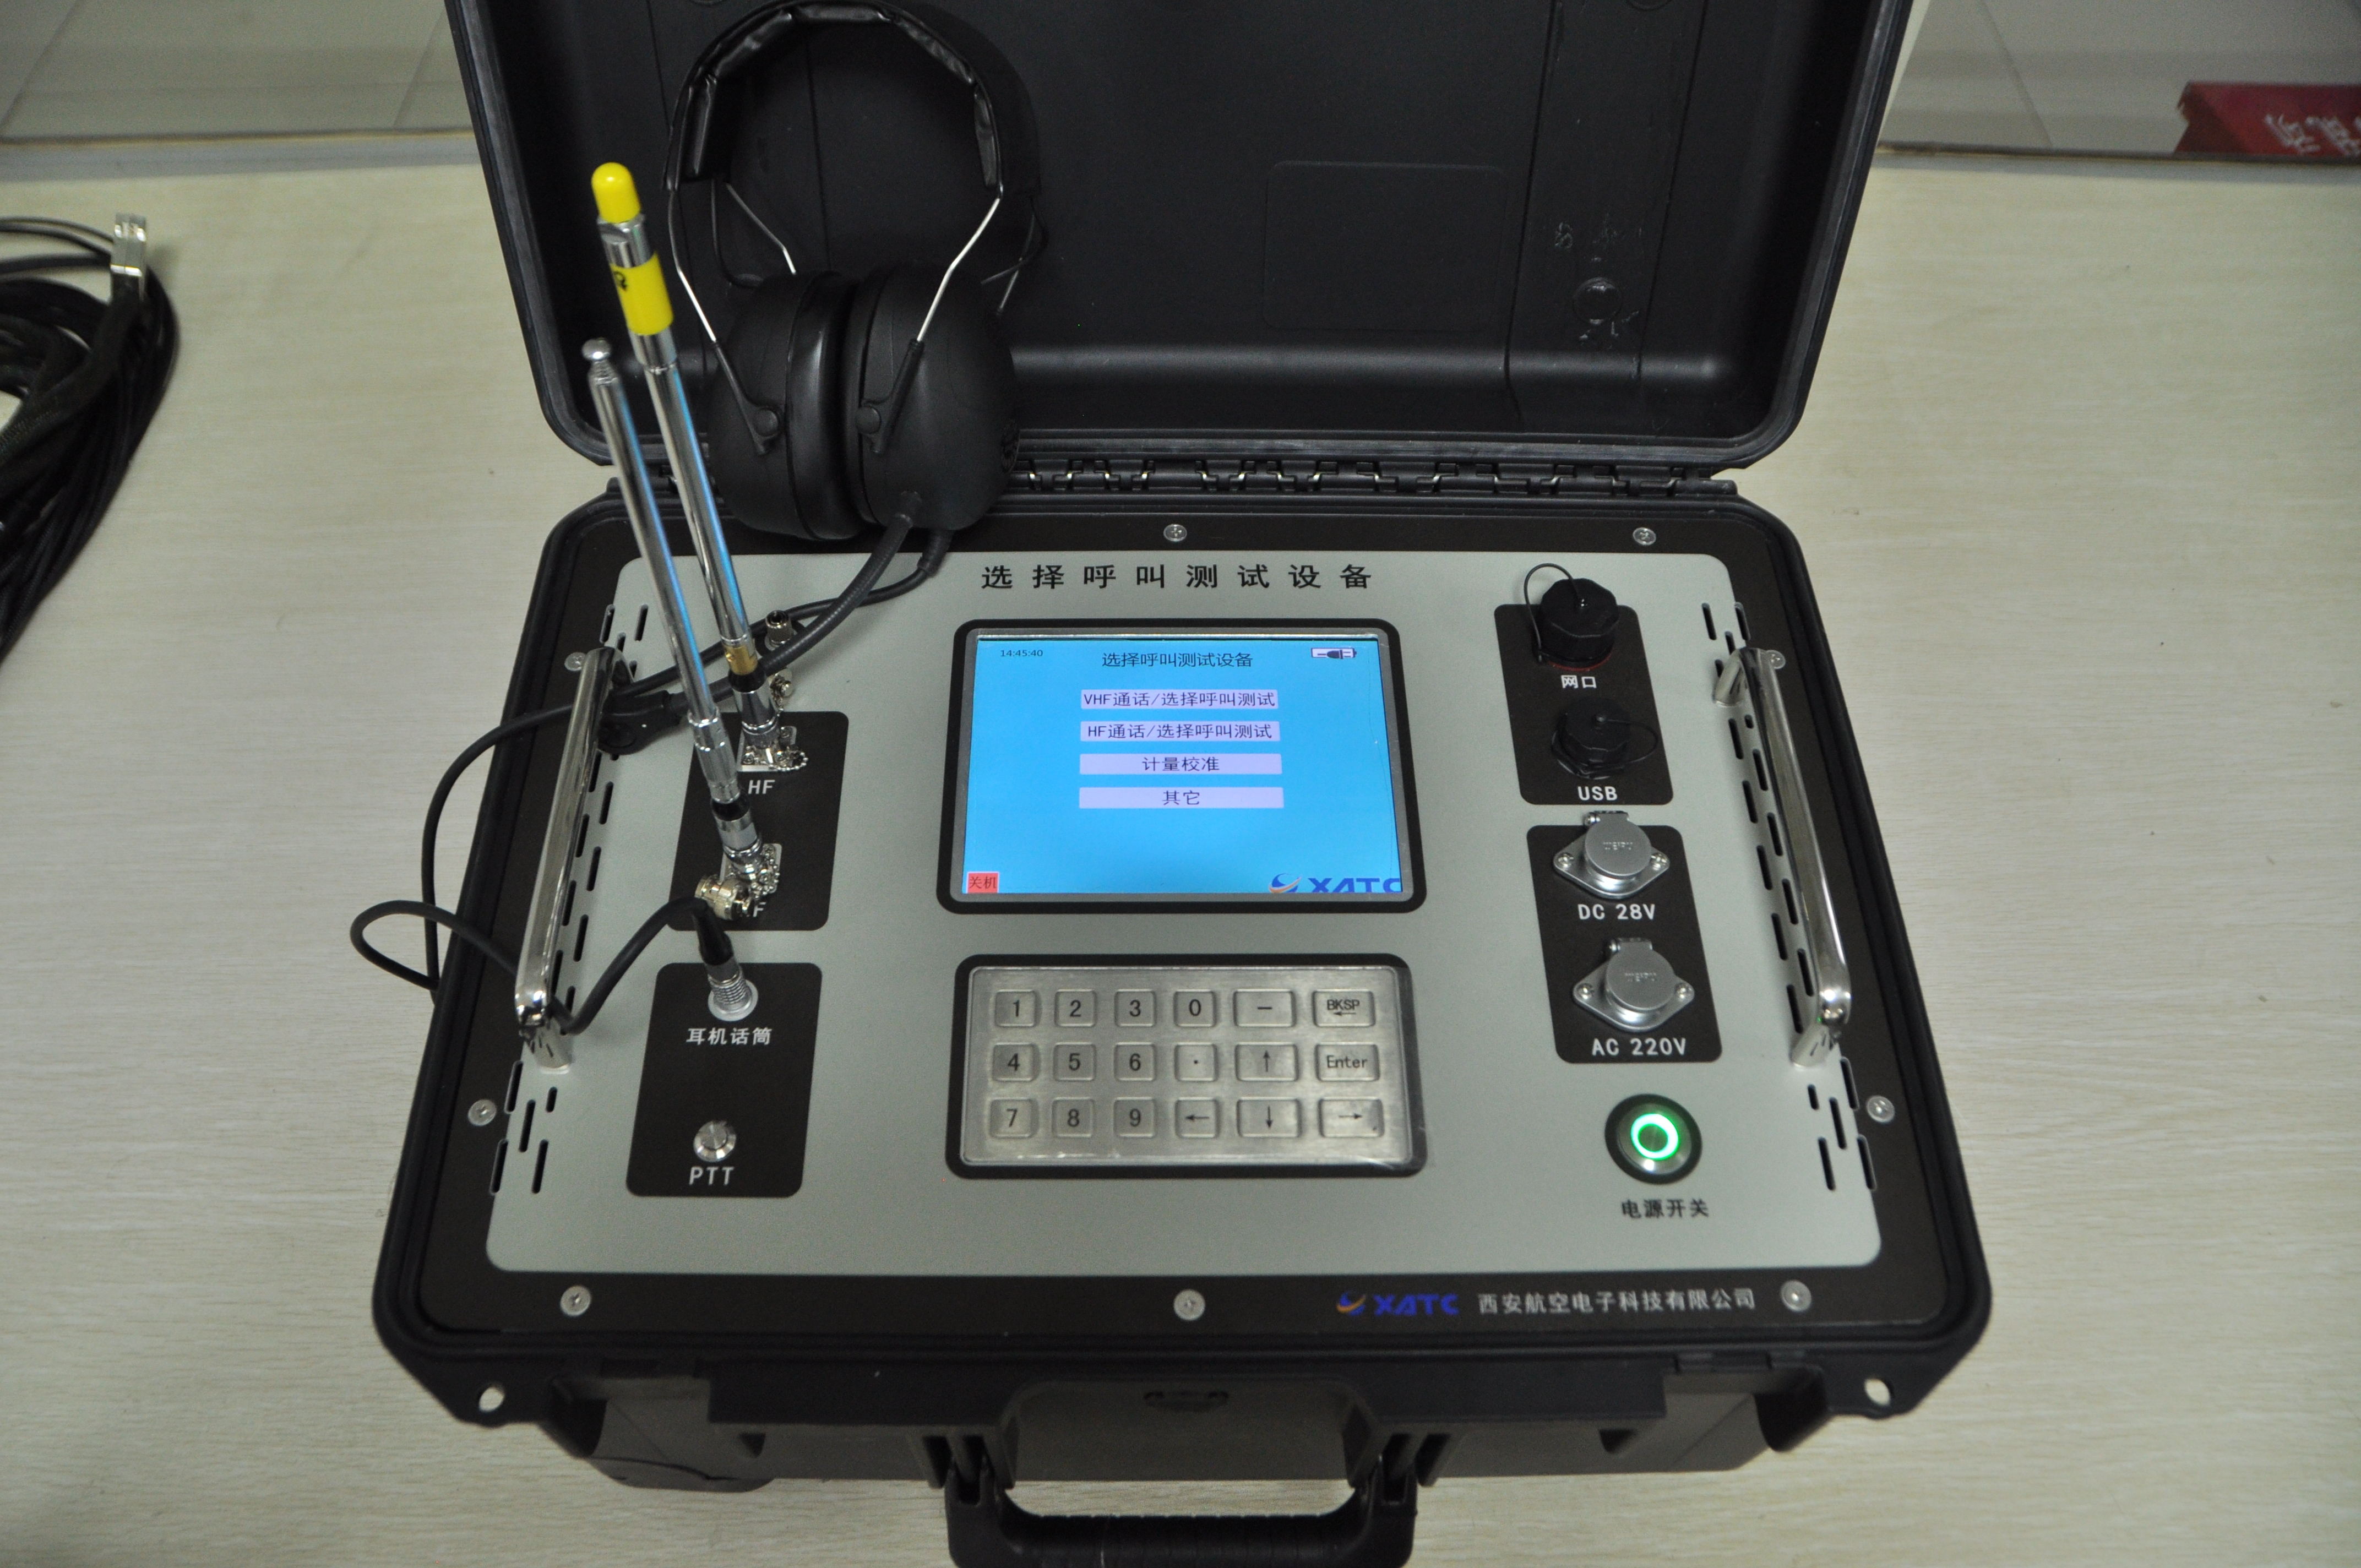 機載短波/超短波電臺選擇呼叫檢測儀